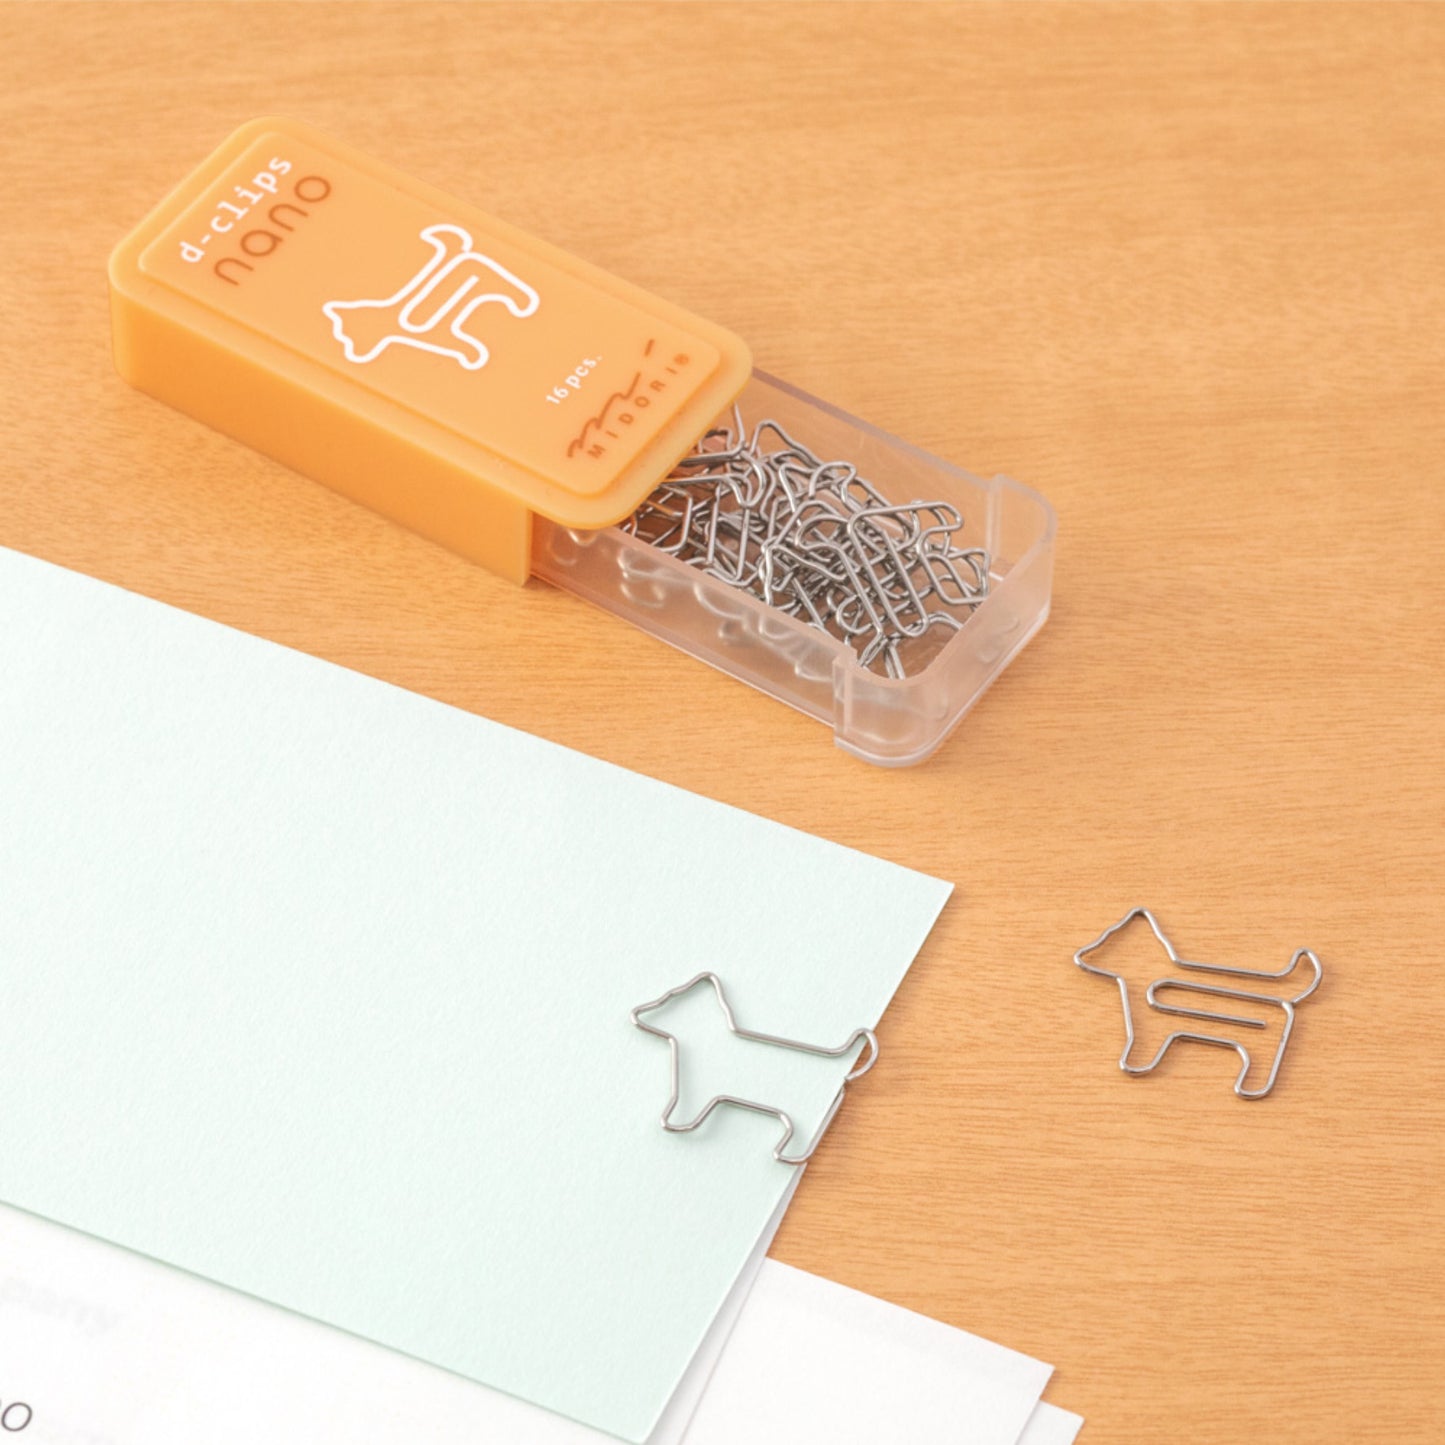 Midori Miniature Shaped Paperclips